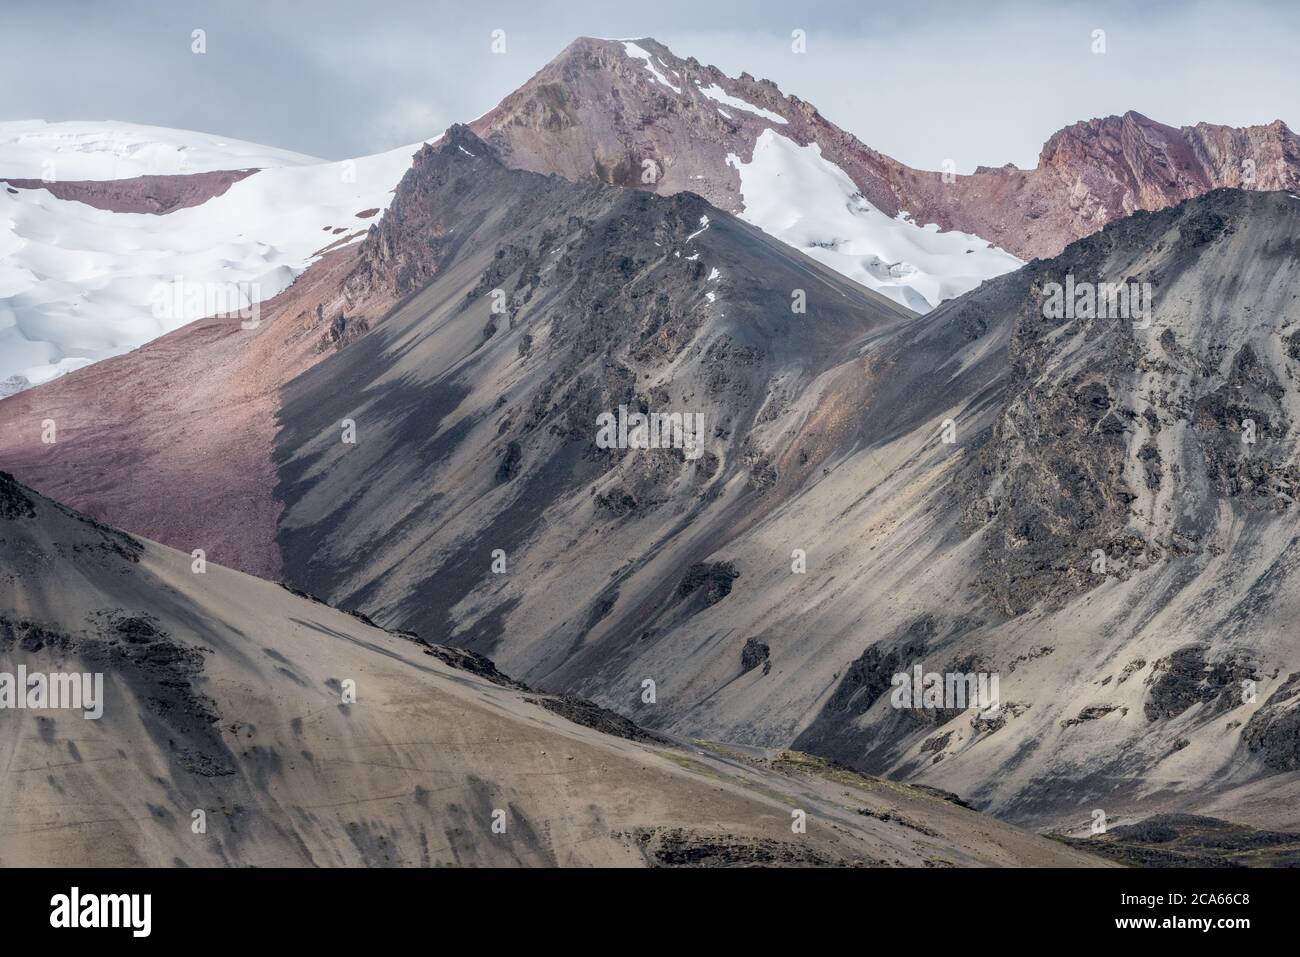 La géologie et les couleurs intéressantes des rochers et du sable font une belle vue sur la montagne dans les Andes péruviennes dans la Cordillère Vilcanota. Banque D'Images